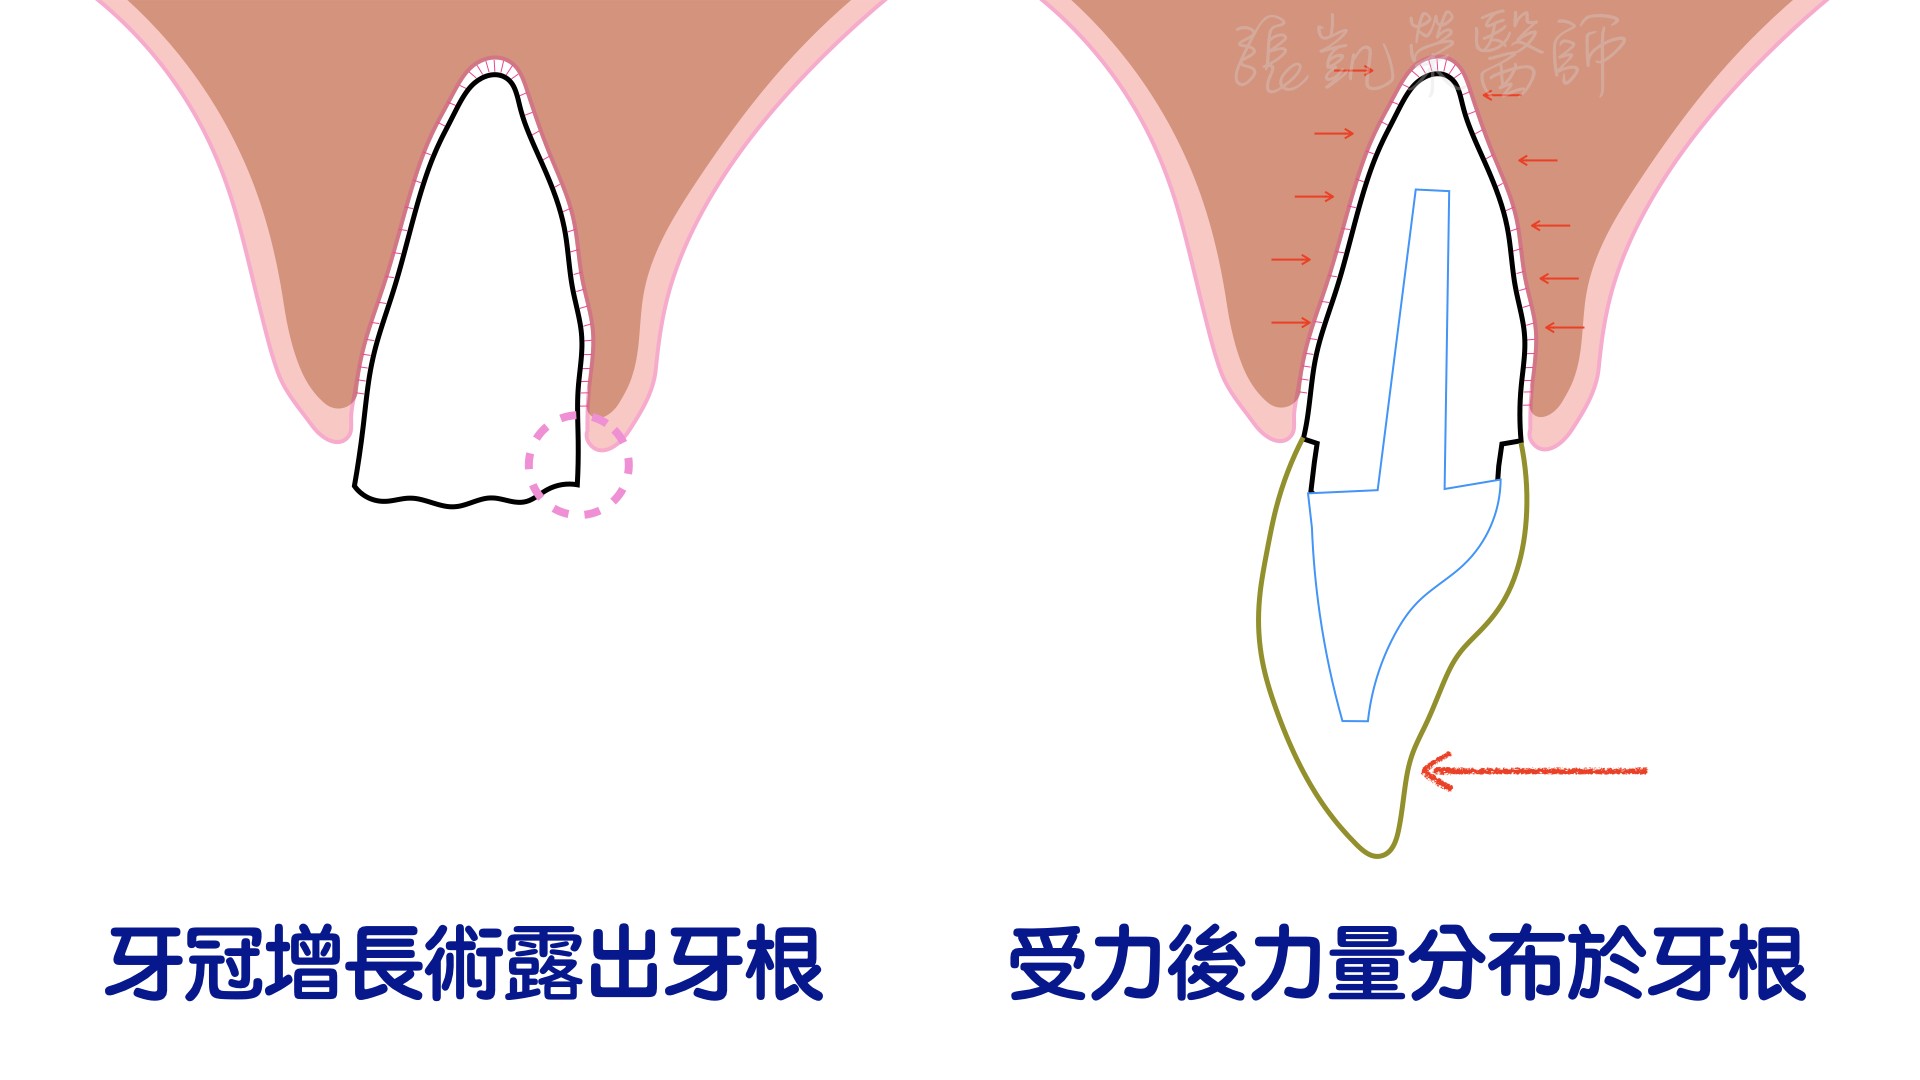 牙冠增長術 part II---拯救牙冠嚴重受傷的牙齒